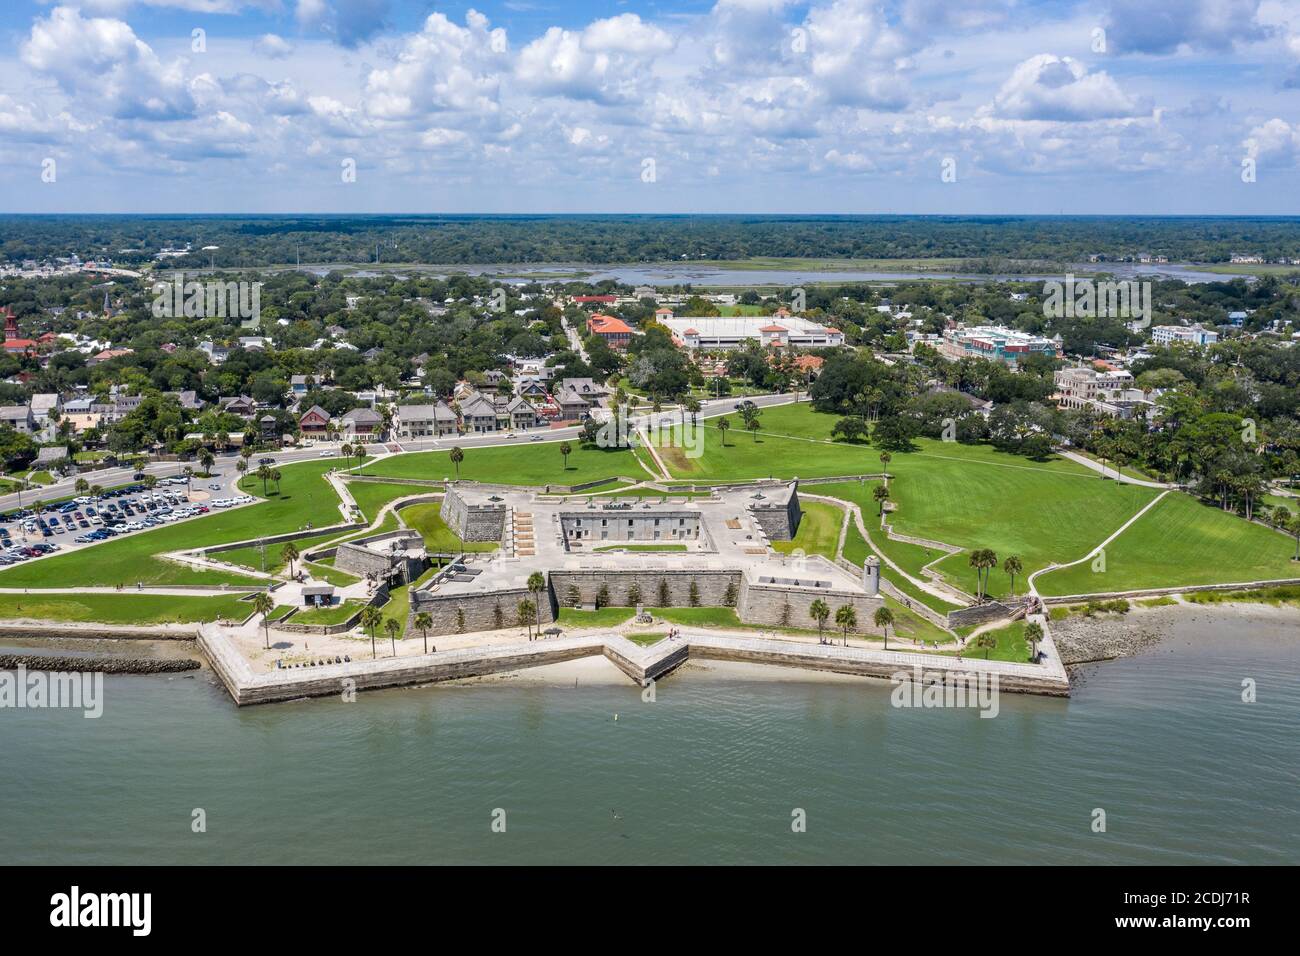 Vue aérienne du Castillo de San Marcos, le plus ancien fort de maçonnerie du continent des États-Unis à St. Augustine, Floride. Banque D'Images